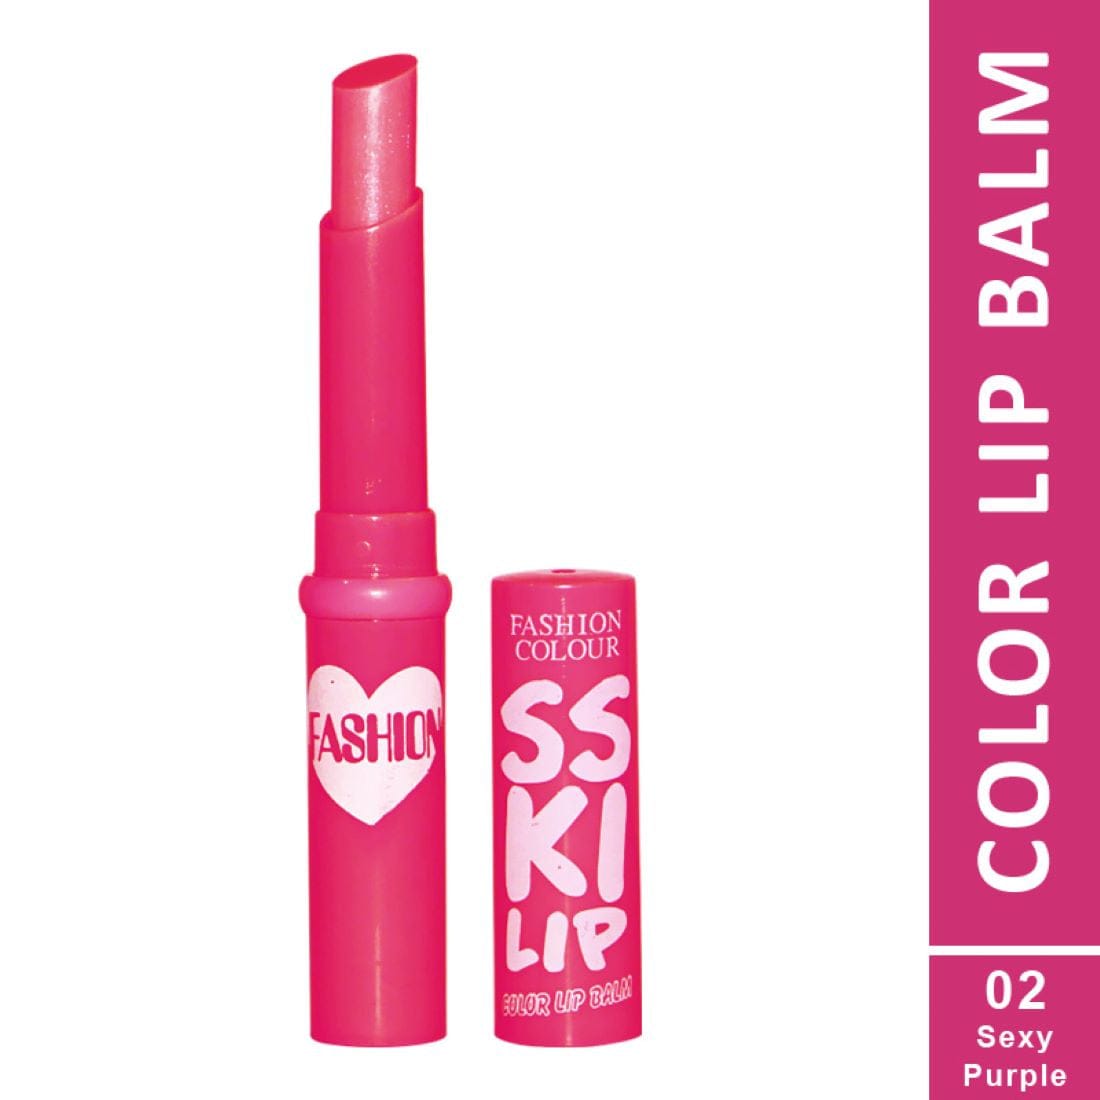 lipstick > Nude lipstick > Color lipstick > Lipstick colors > shades > fashion colour lipstick > Lipstick shades > Lip blam